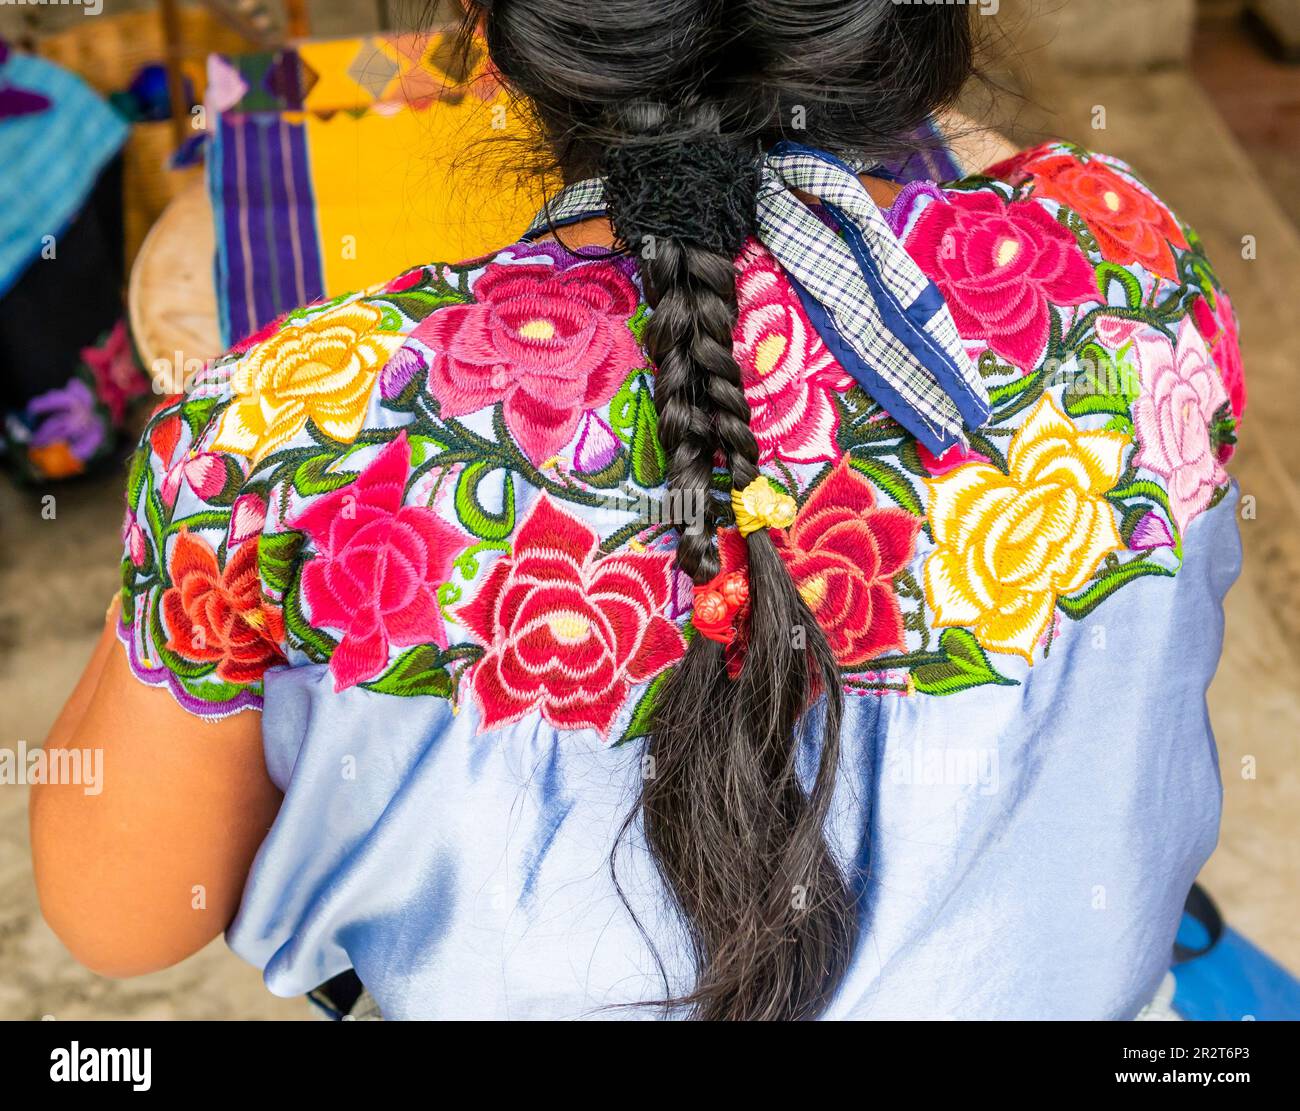 Traditioneller Look einer einheimischen Mexikanerin mit geflochtenem Haar und blauem Hemd mit bunten Blumen Stockfoto